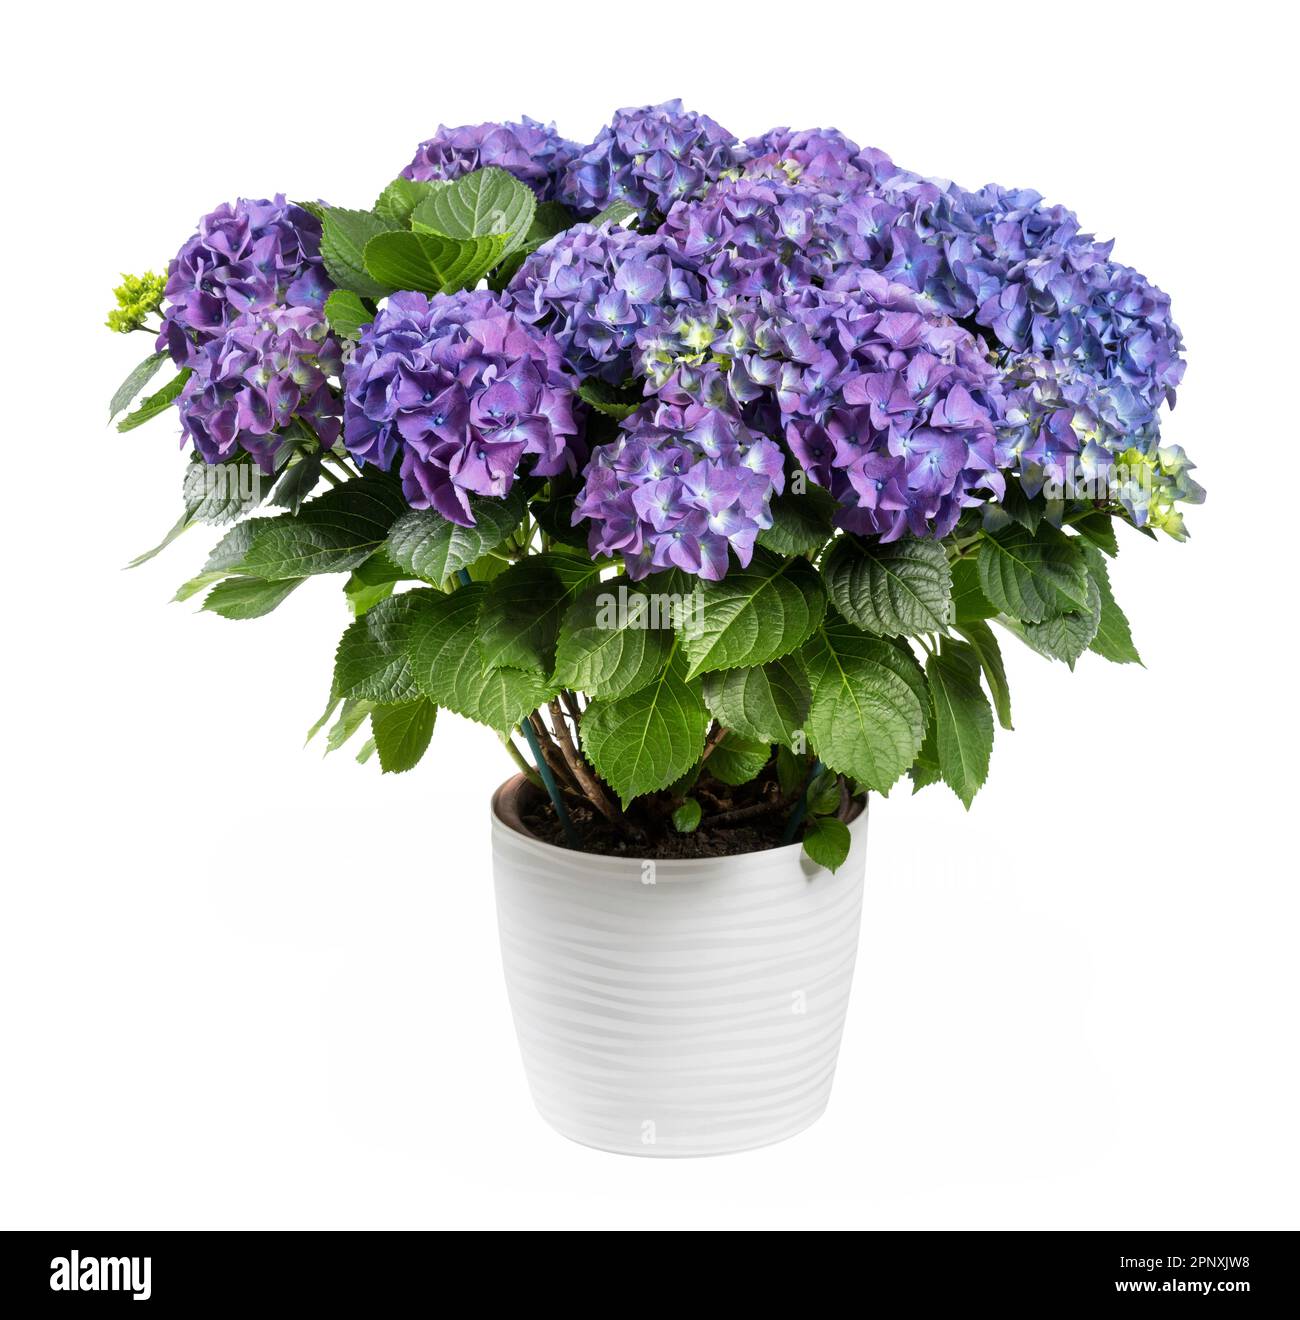 Ein Haufen frischer, leuchtend blühender, violetter Hortensienblüten mit grünen Blättern, die in einem Keramiktopf wachsen, isoliert auf weißem Hintergrund Stockfoto